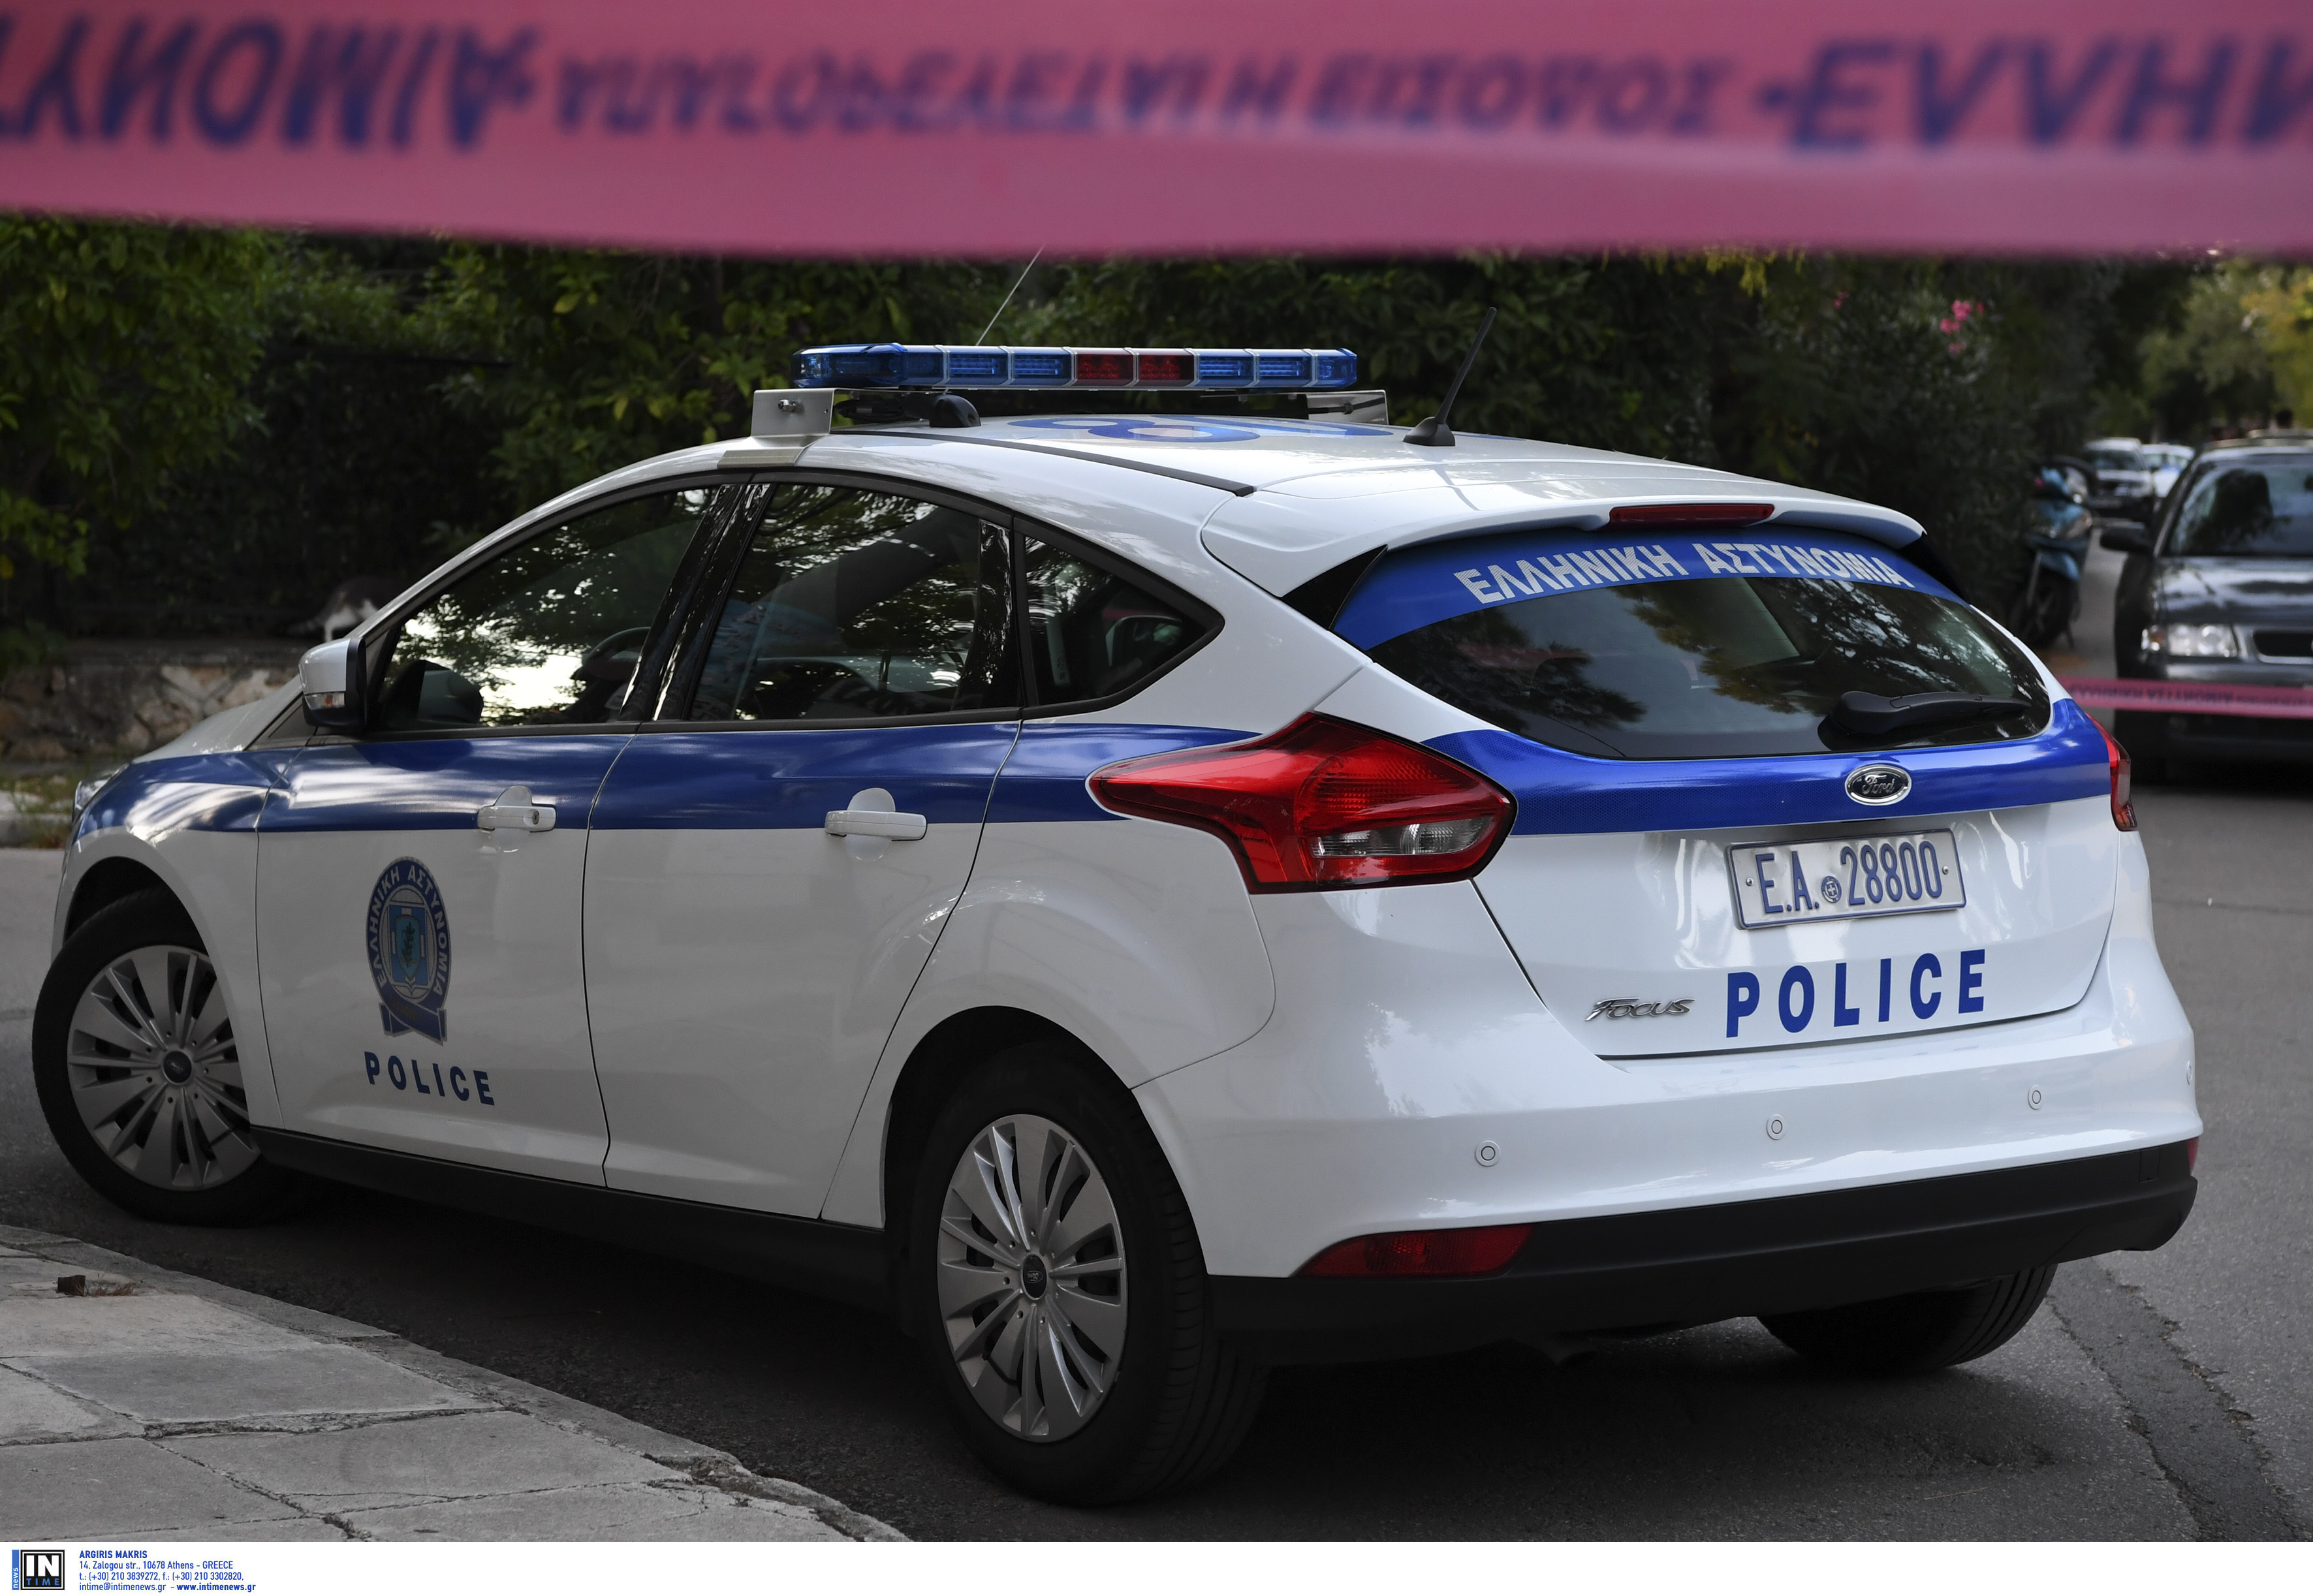 Θεσσαλονίκη: Πέντε εναντίον ενός για ένα πορτοφόλι – Έβγαλαν μαχαίρια κοντά στη ΔΕΘ!